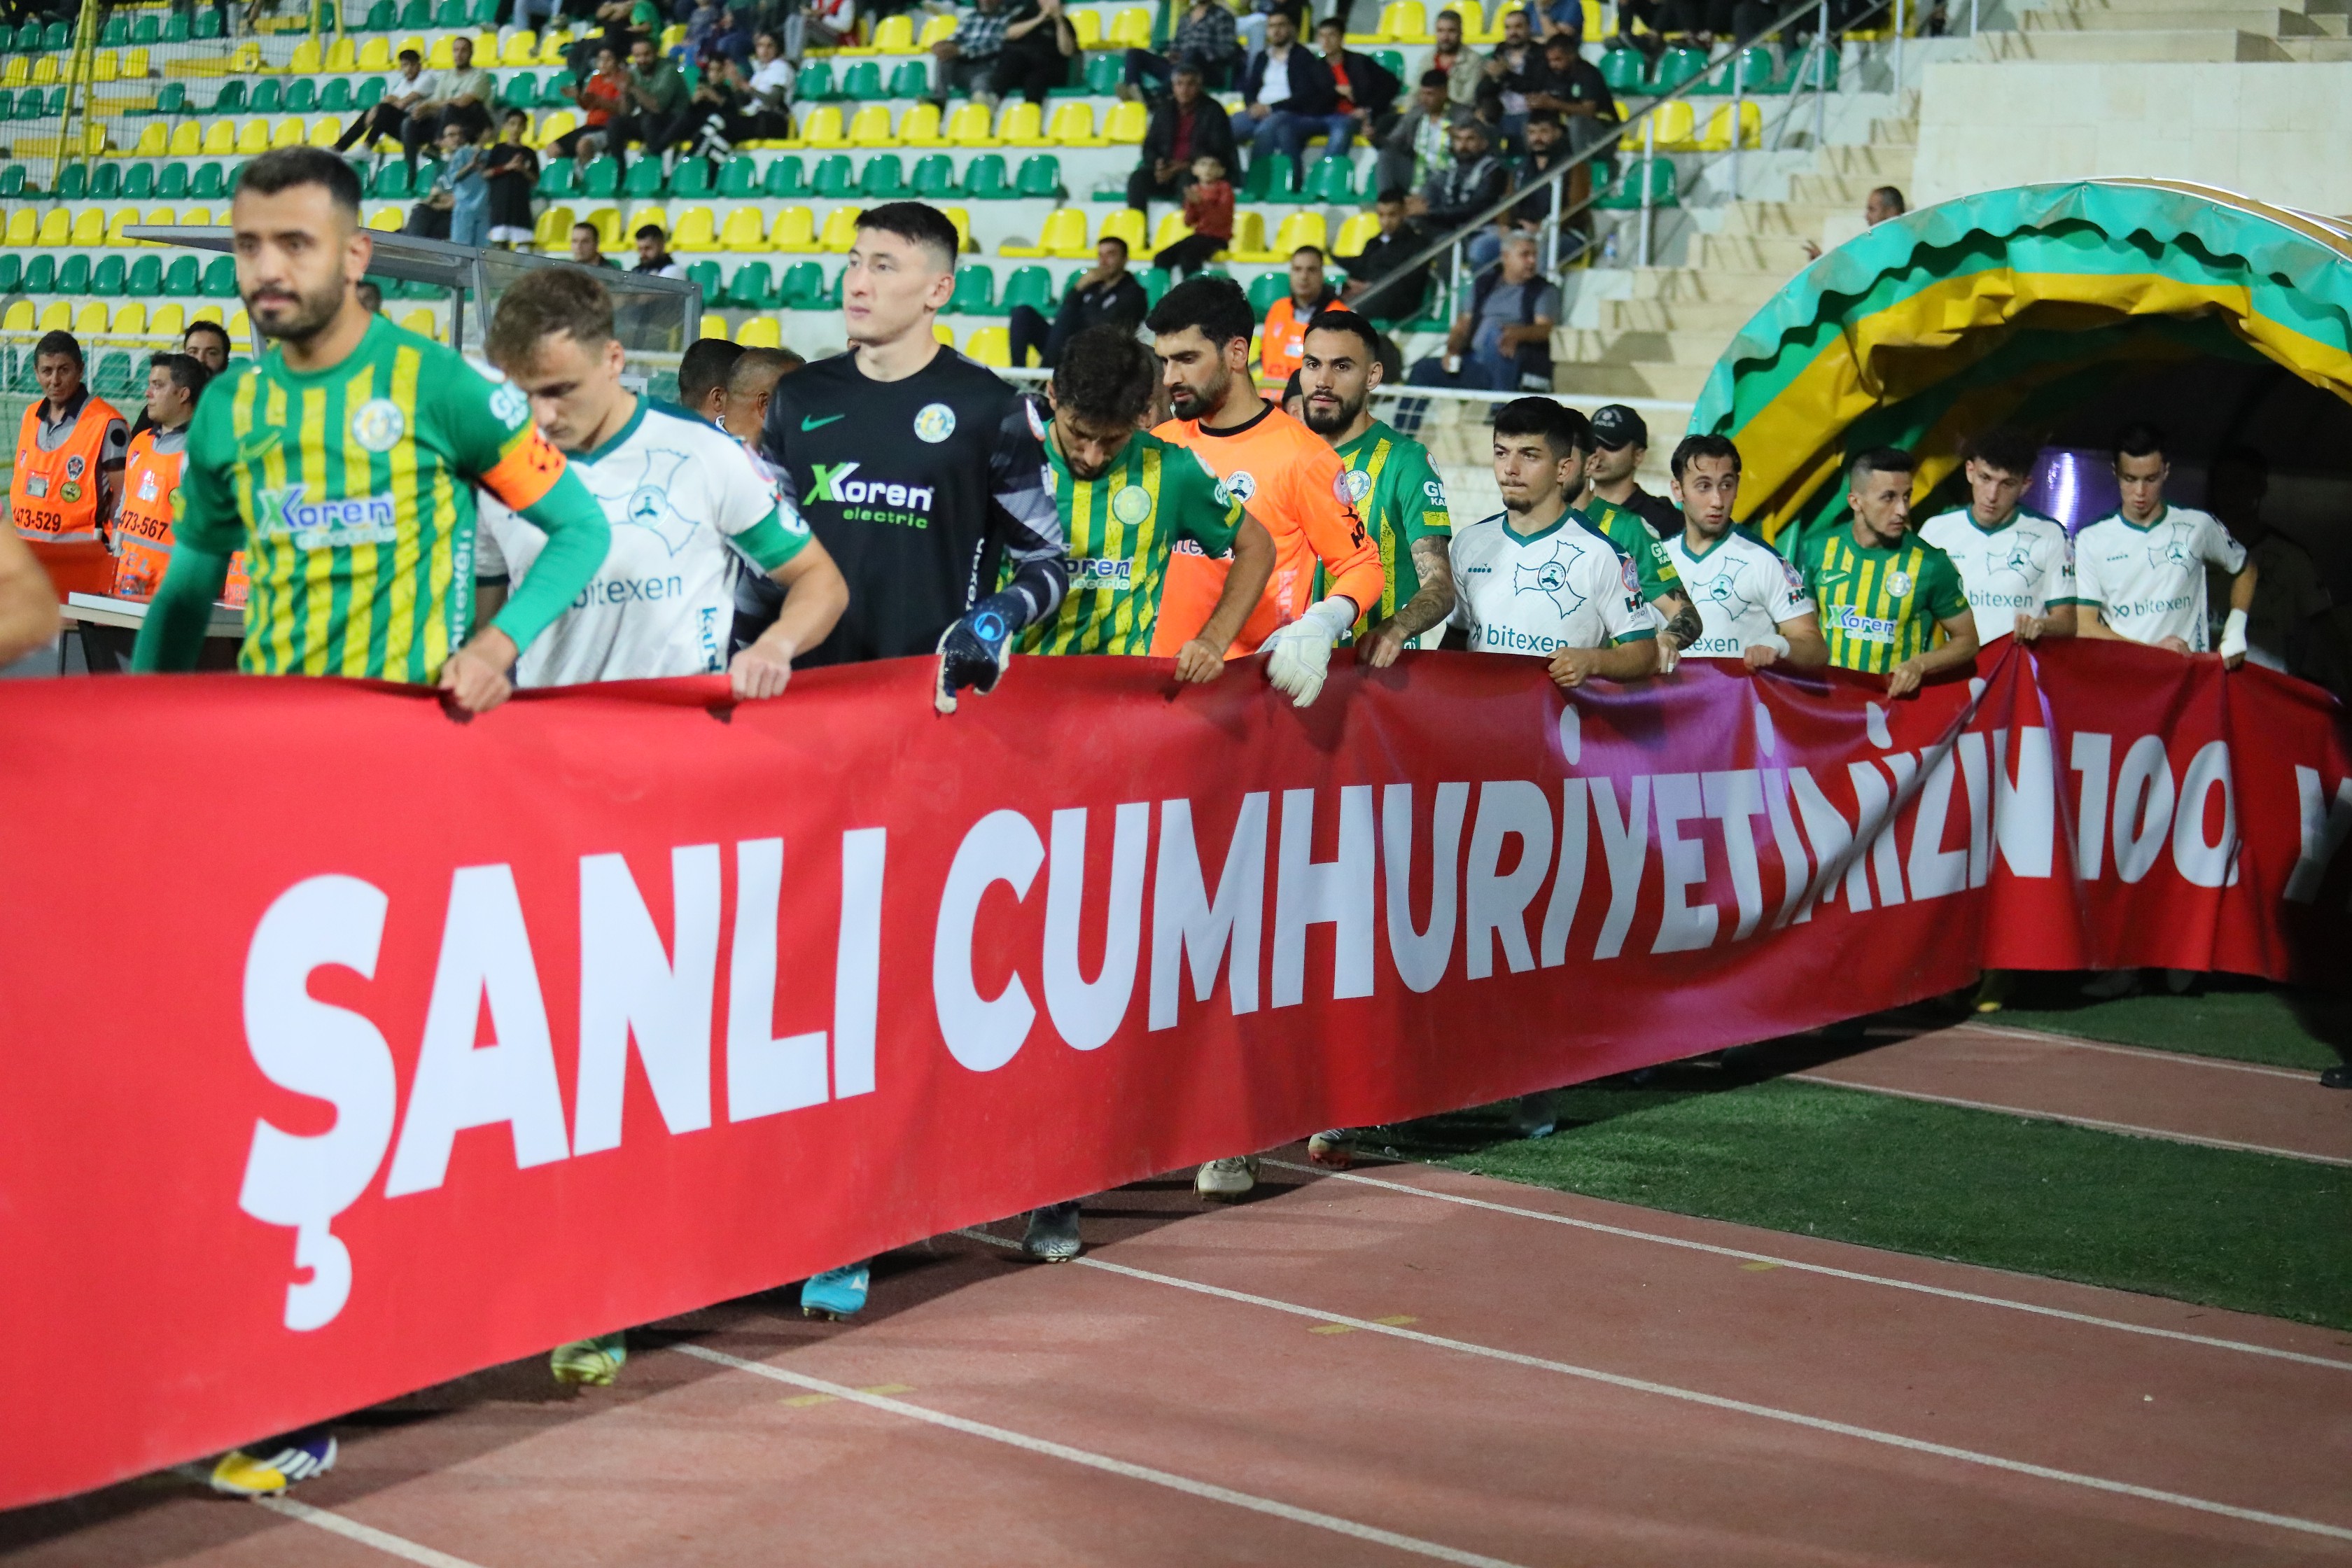 Şanlıurfaspor'dan "Şanlı Cumhuriyet" pankartı